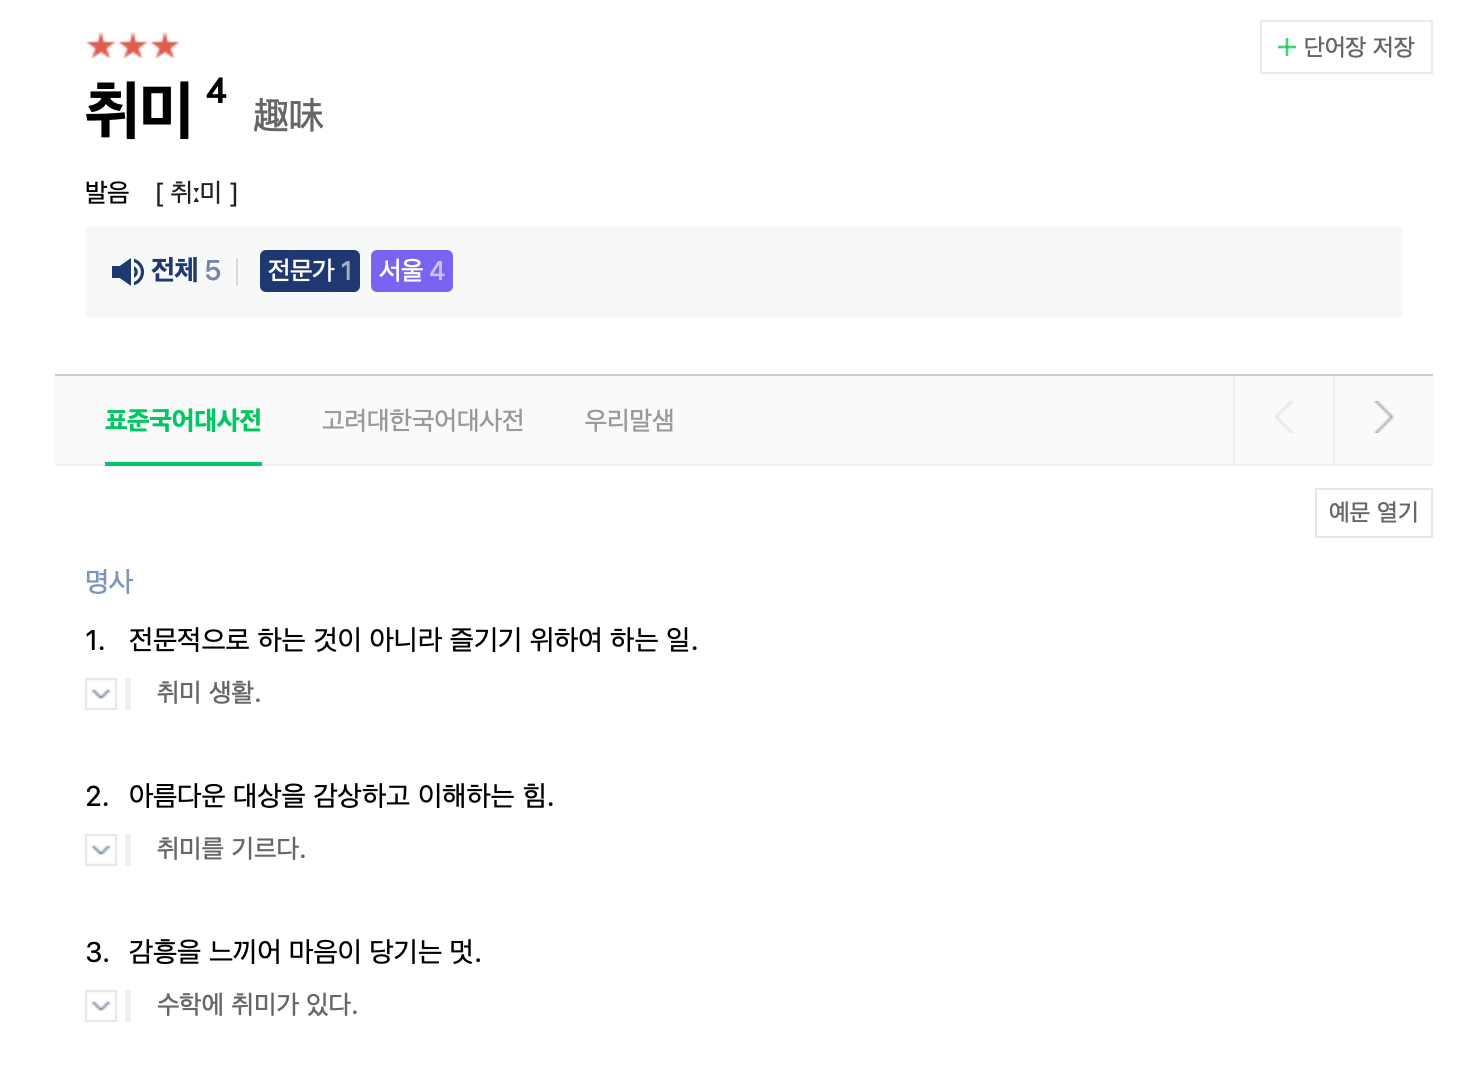 네이버 국어사전, '취미' 검색결과